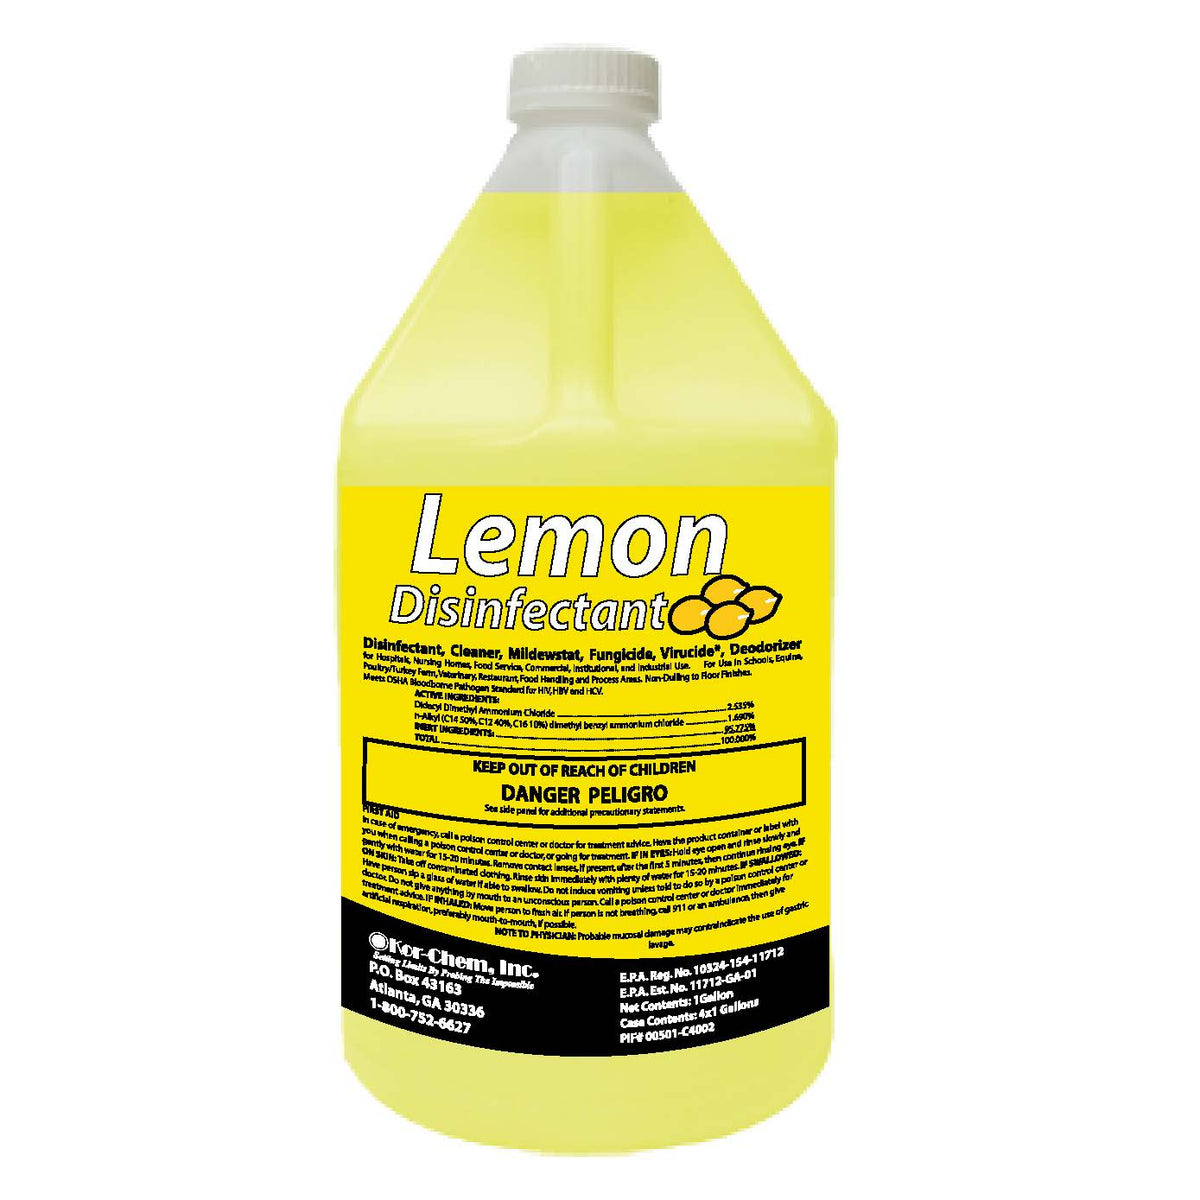 Lemon Disinfectant